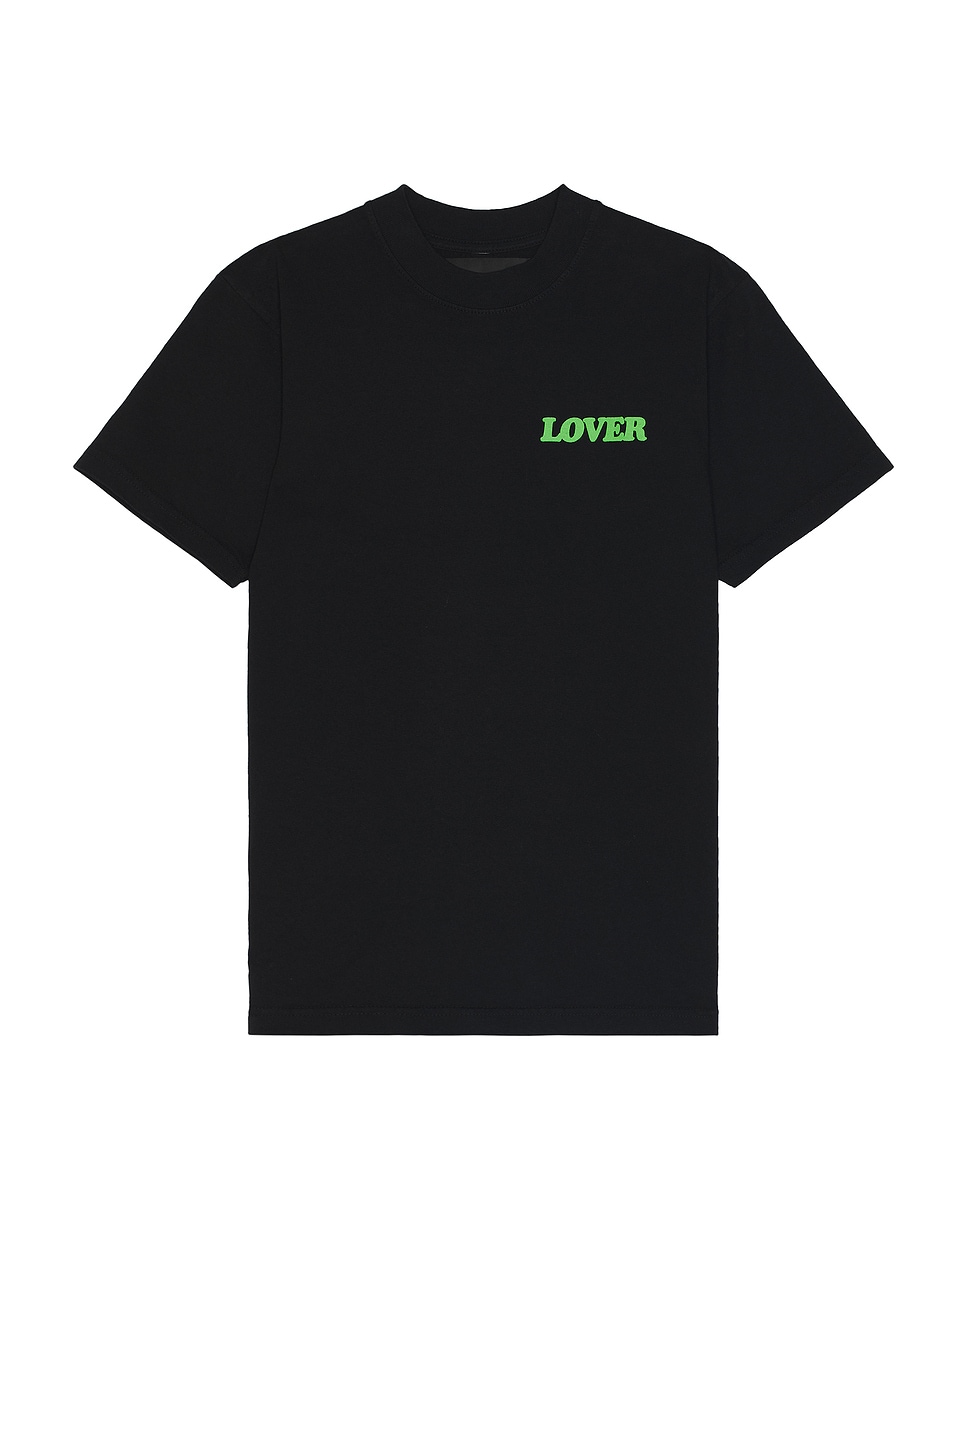 Lover Side Logo Shirt in Black